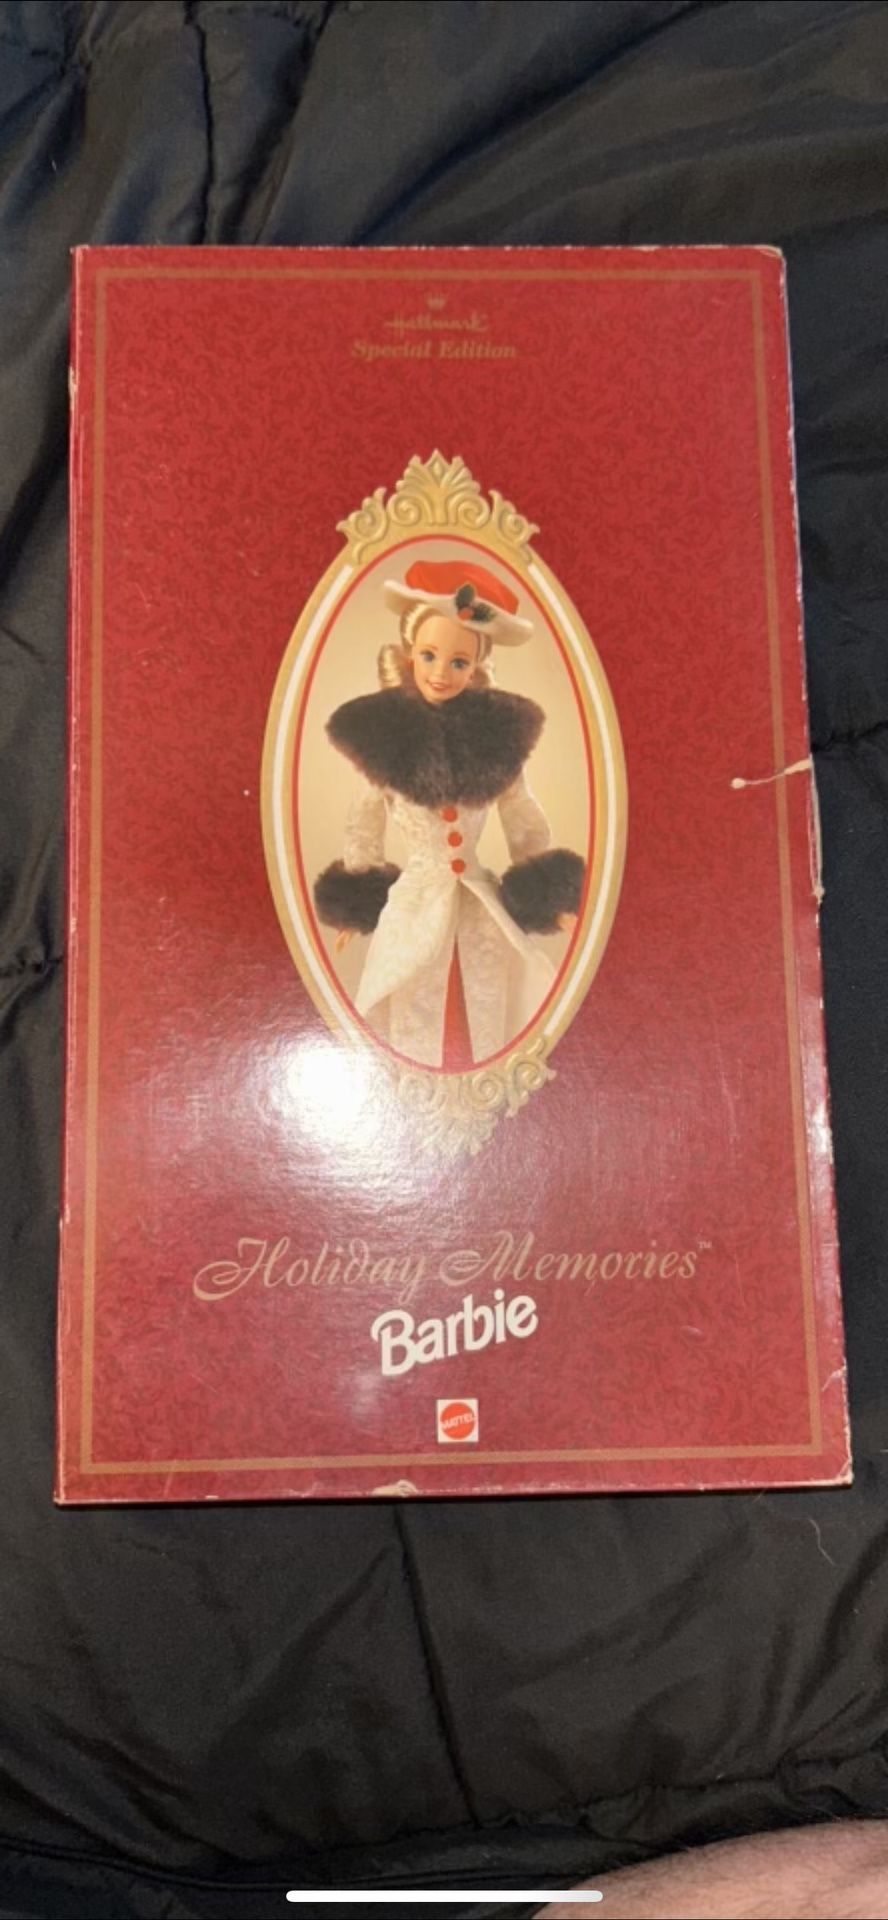 Holiday Memories Barbie 1995